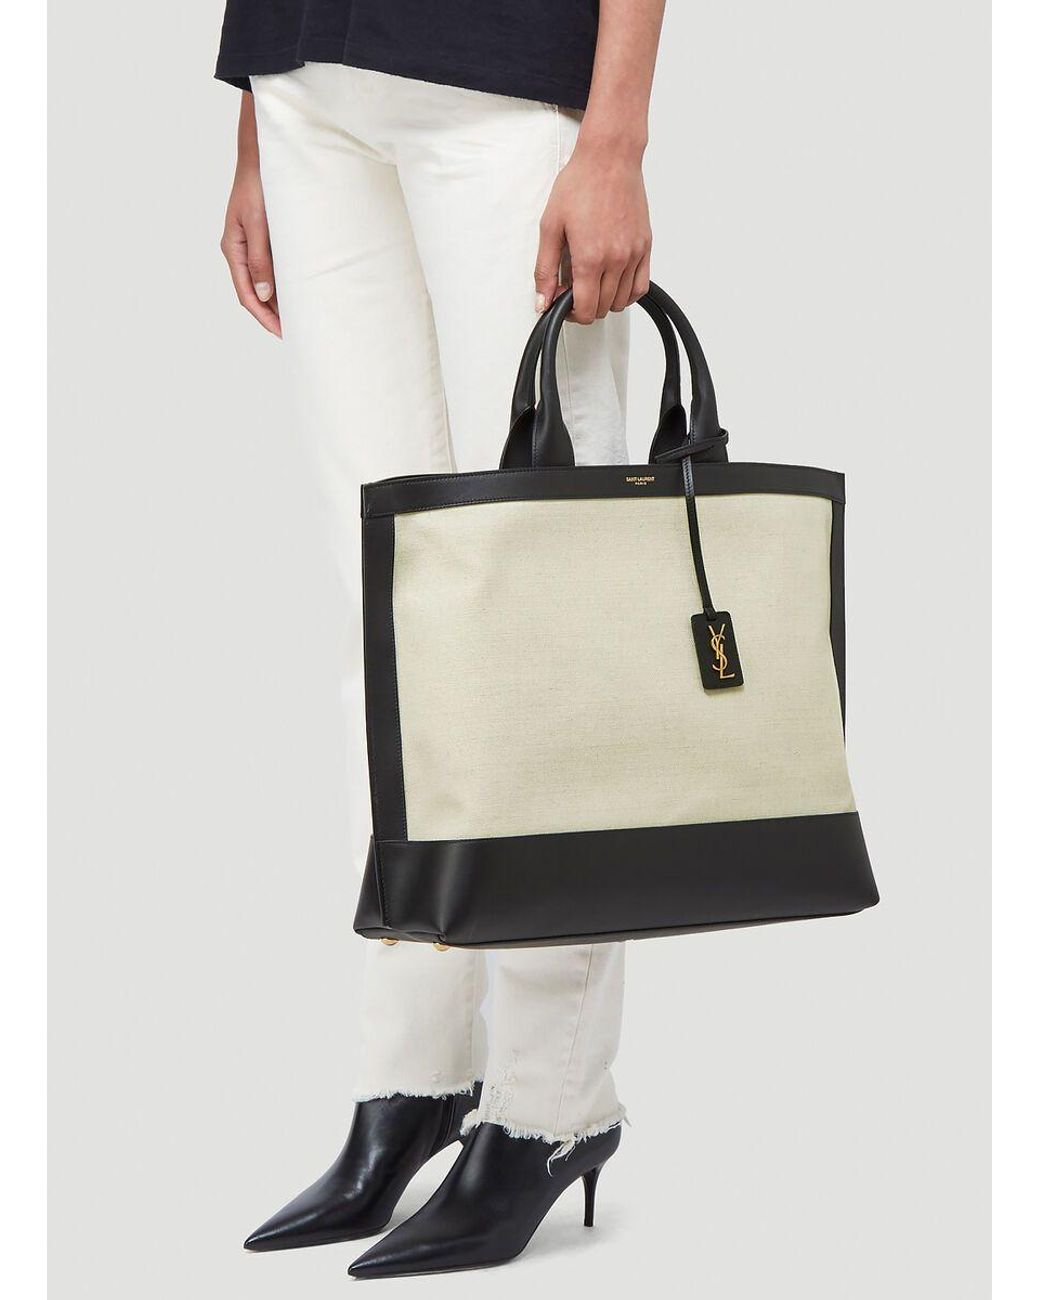 Shopping Saint Laurent Handbag Collection, Saint Laurent